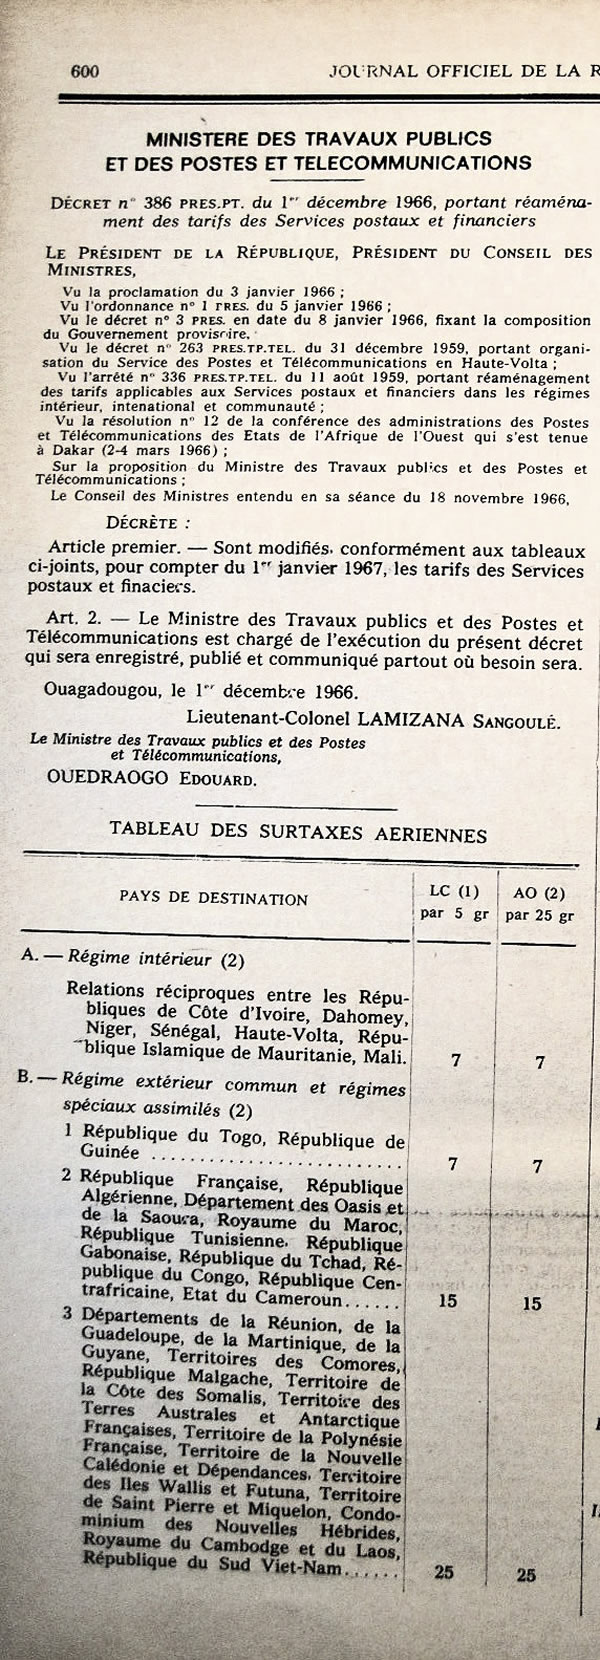 Tarifs postaux au départ de la Haute Volta dans les régimes intérieur, étendu et international ainsi que les surtaxes postales aériennes 1er janvier 1967